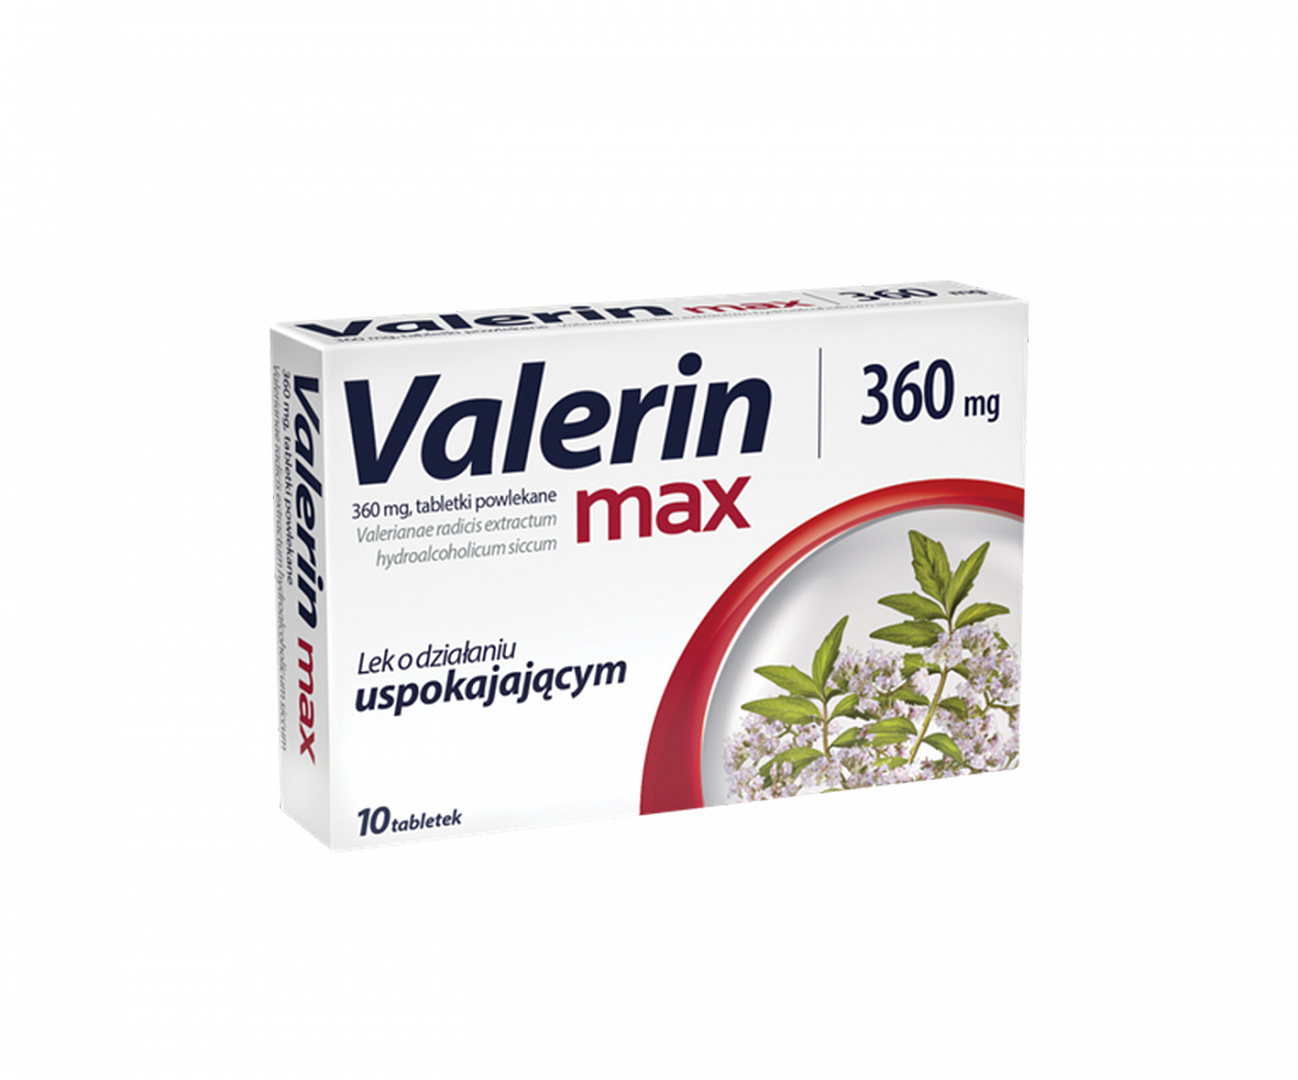 Aflofarm, Valerin Max, Stressabbau-Pillen mit beruhigender Wirkung